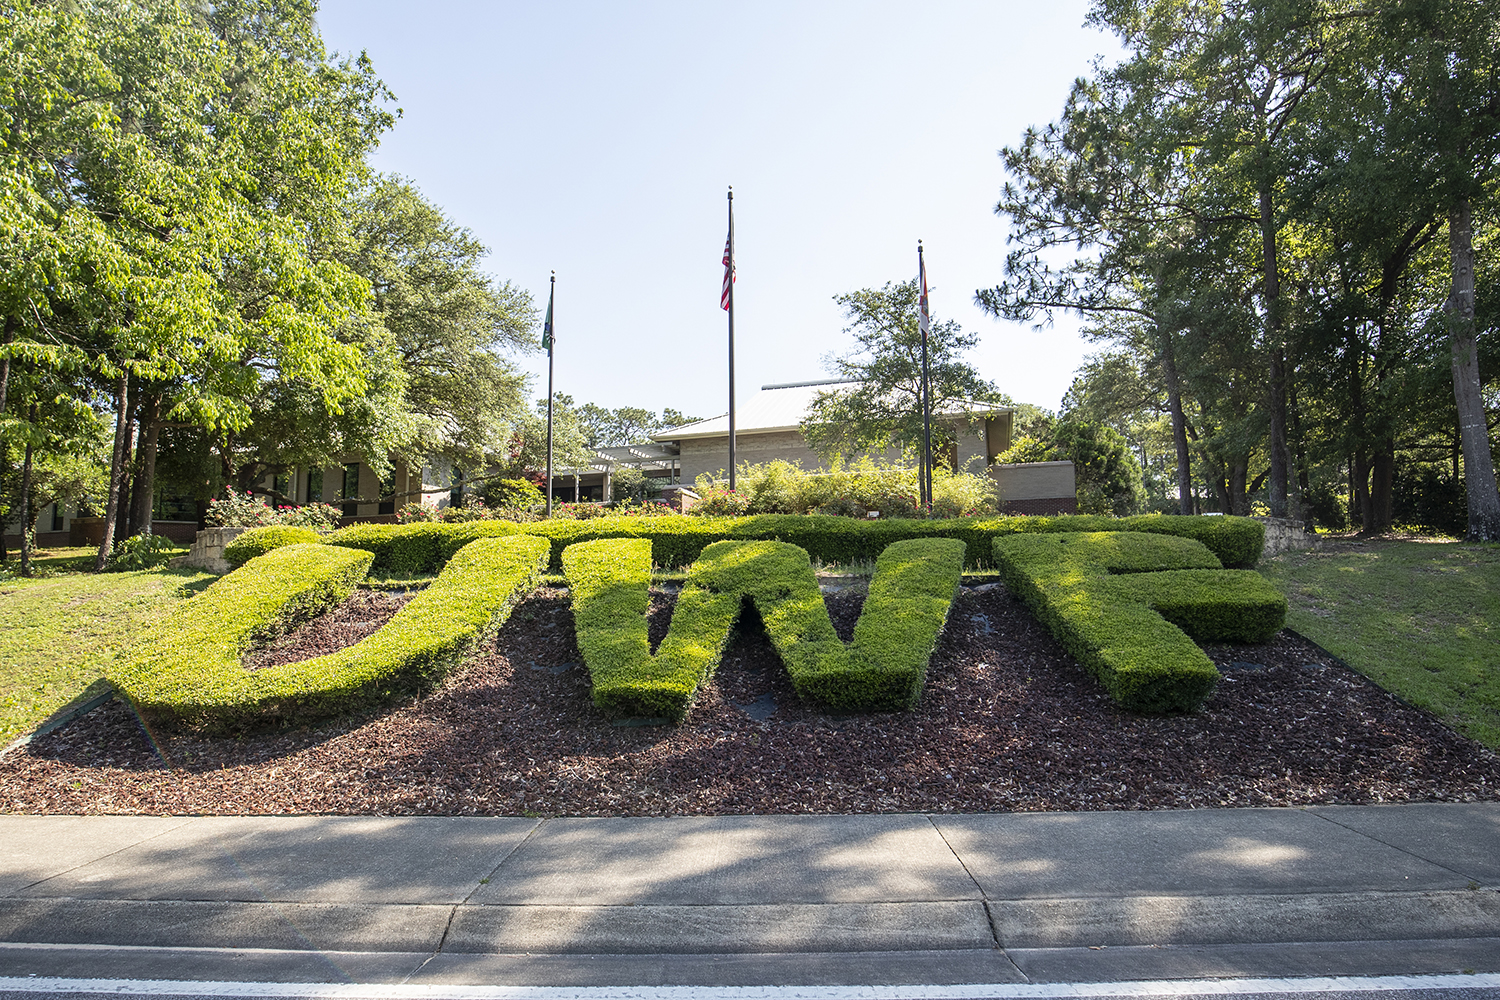 Main entrance to UWF's Pensacola Campus